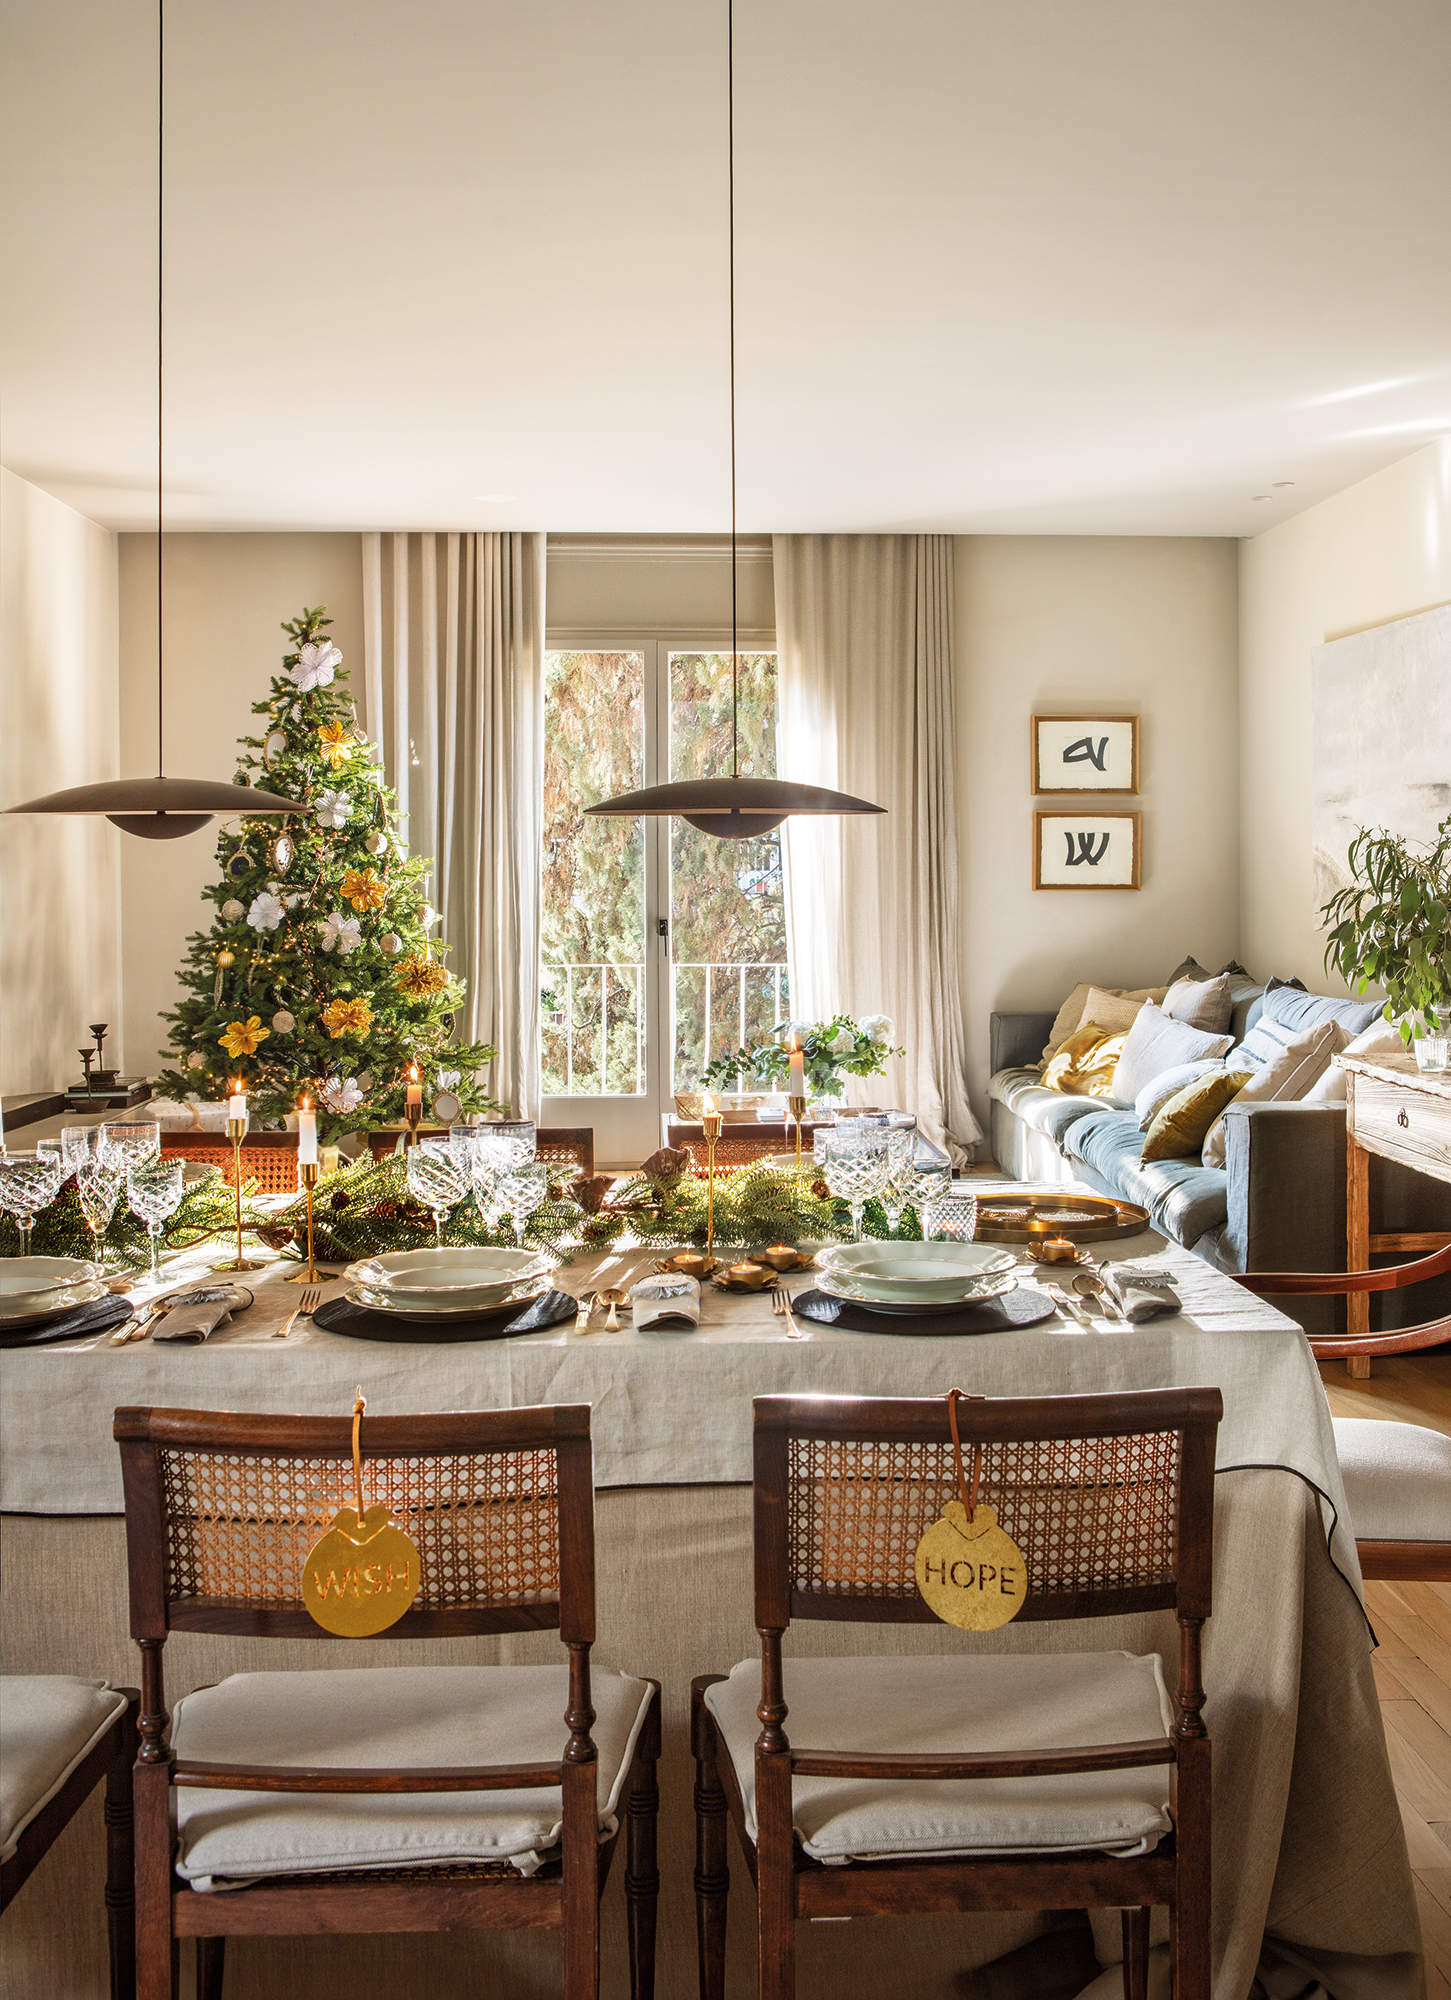 Salón comedor decorado de Navidad elegante y actual, adornos en dorado, muebles de madera y textiles cálidos.